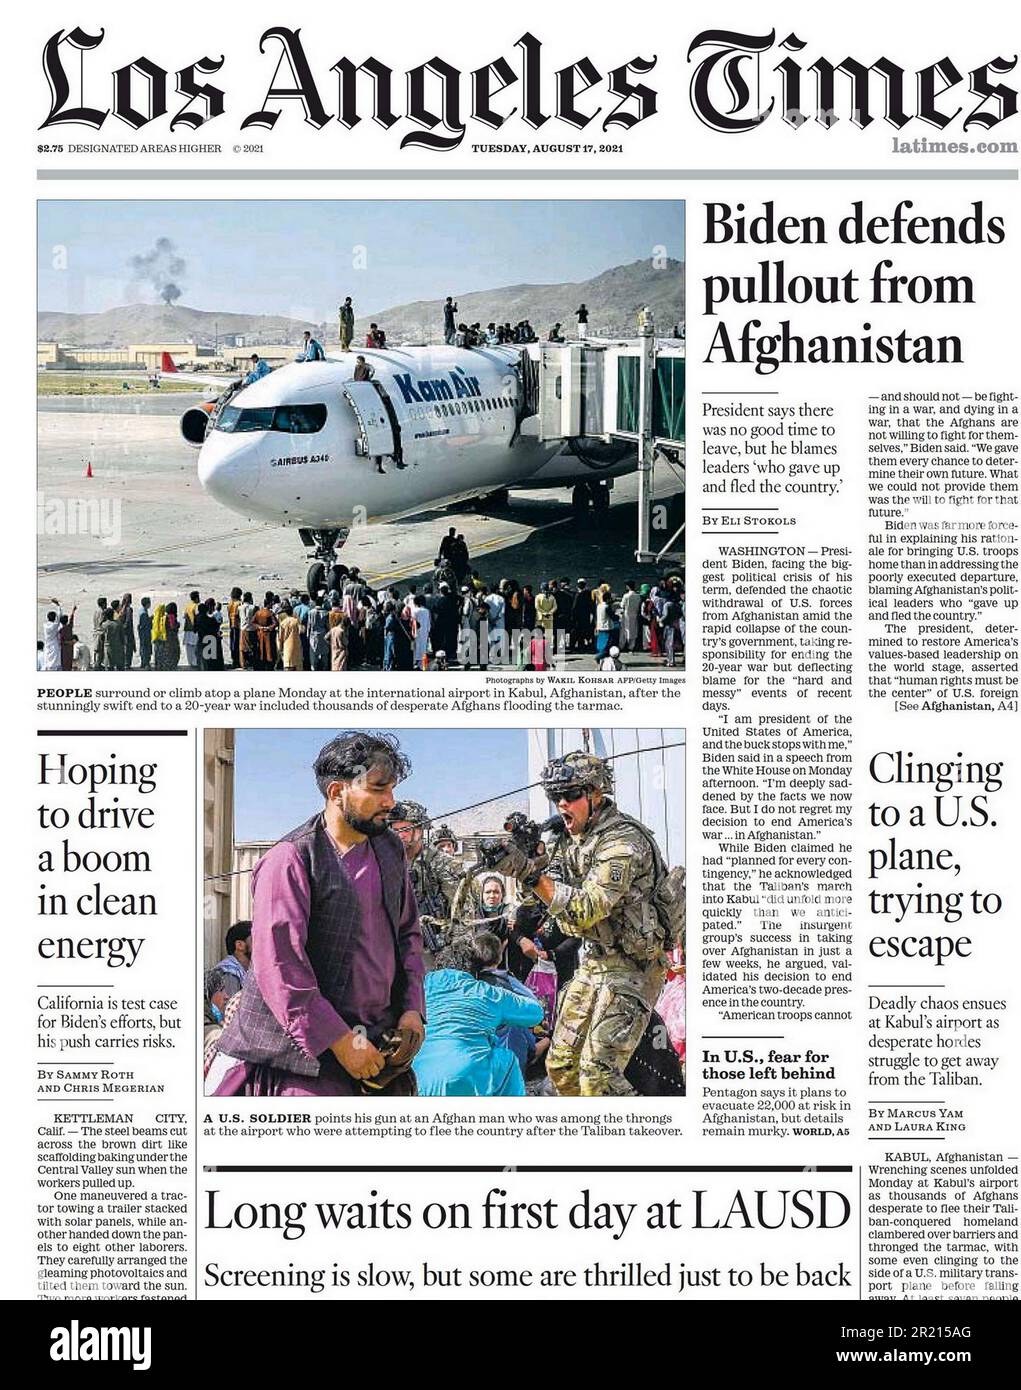 Los Angeles Times Zeitung Headline (USA), Evakuierung aus Afghanistan. 17. august 2021. Während des Rückzugs der US- und NATO-Streitkräfte am Ende des Krieges in Afghanistan im Jahr 2001-2021 fanden umfangreiche Evakuierungen ausländischer Bürger und einiger schutzbedürftiger afghanischer Bürger statt. Die Taliban übernahmen die Kontrolle über Kabul und erklärten am 15. August 2021 den Sieg, und die von der NATO unterstützte Islamische Republik Afghanistan brach zusammen. Die Taliban kontrollieren die gesamte Stadt mit Ausnahme des Internationalen Flughafens Hamid Karzai, Stockfoto